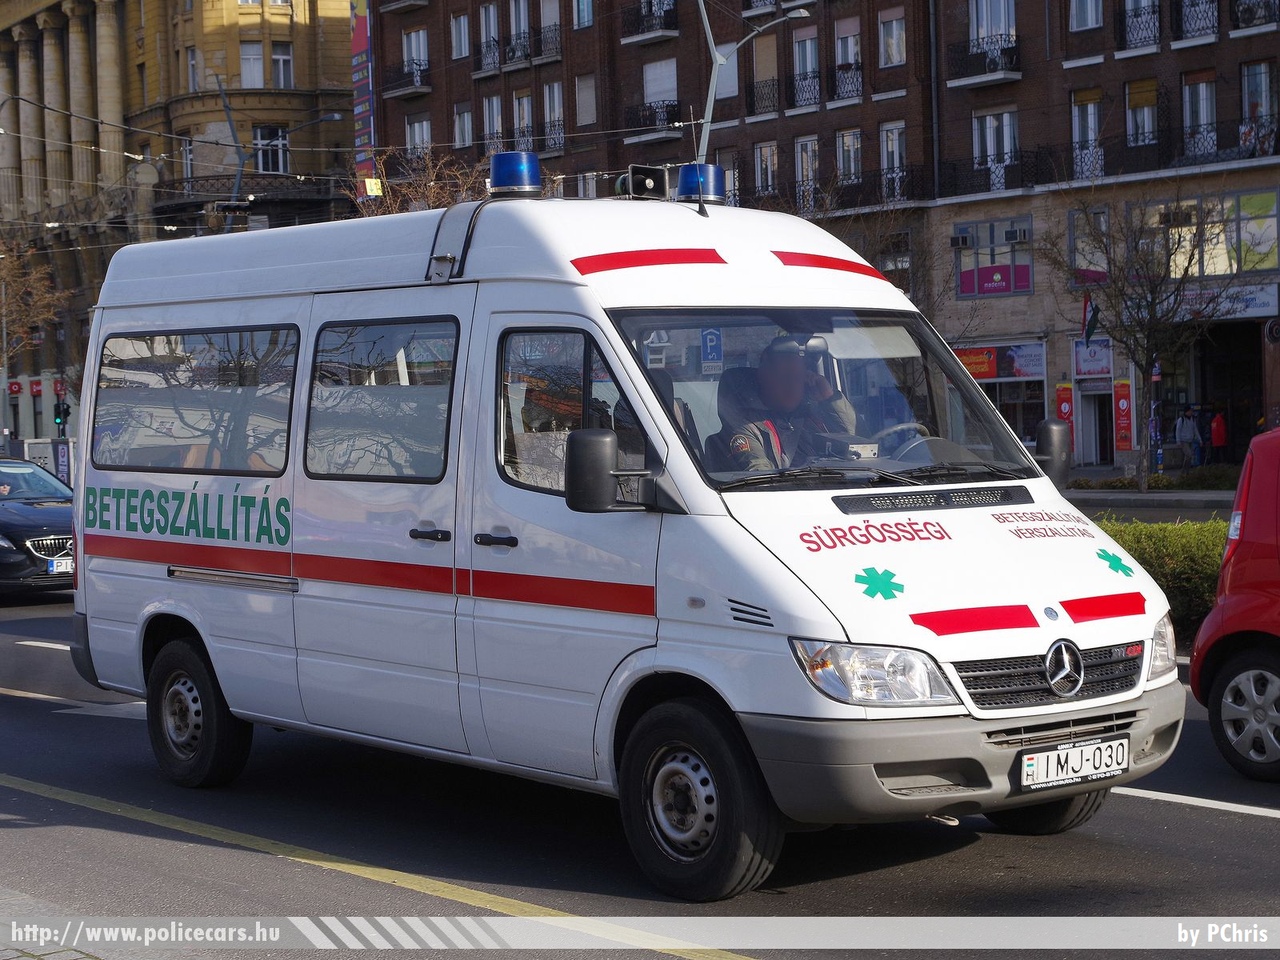 Mercedes Sprinter, fotó: PChris
Keywords: mentő mentőautó magyar Magyarország hungarian Hungary ambulance IMJ-030